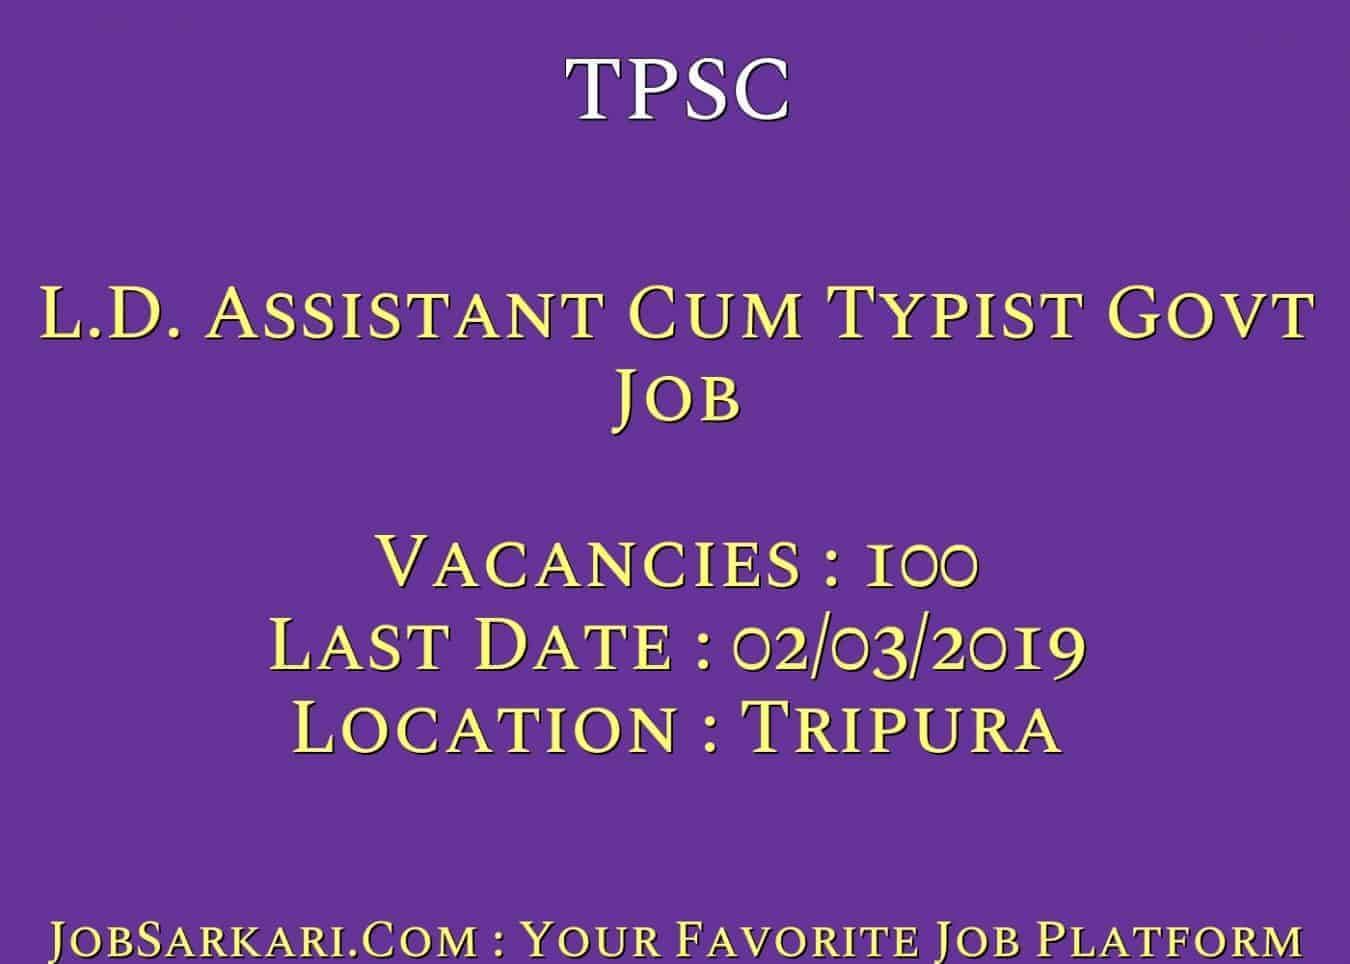 TPSC Recruitment 2019 For L.D. Assistant Cum Typist Govt Job